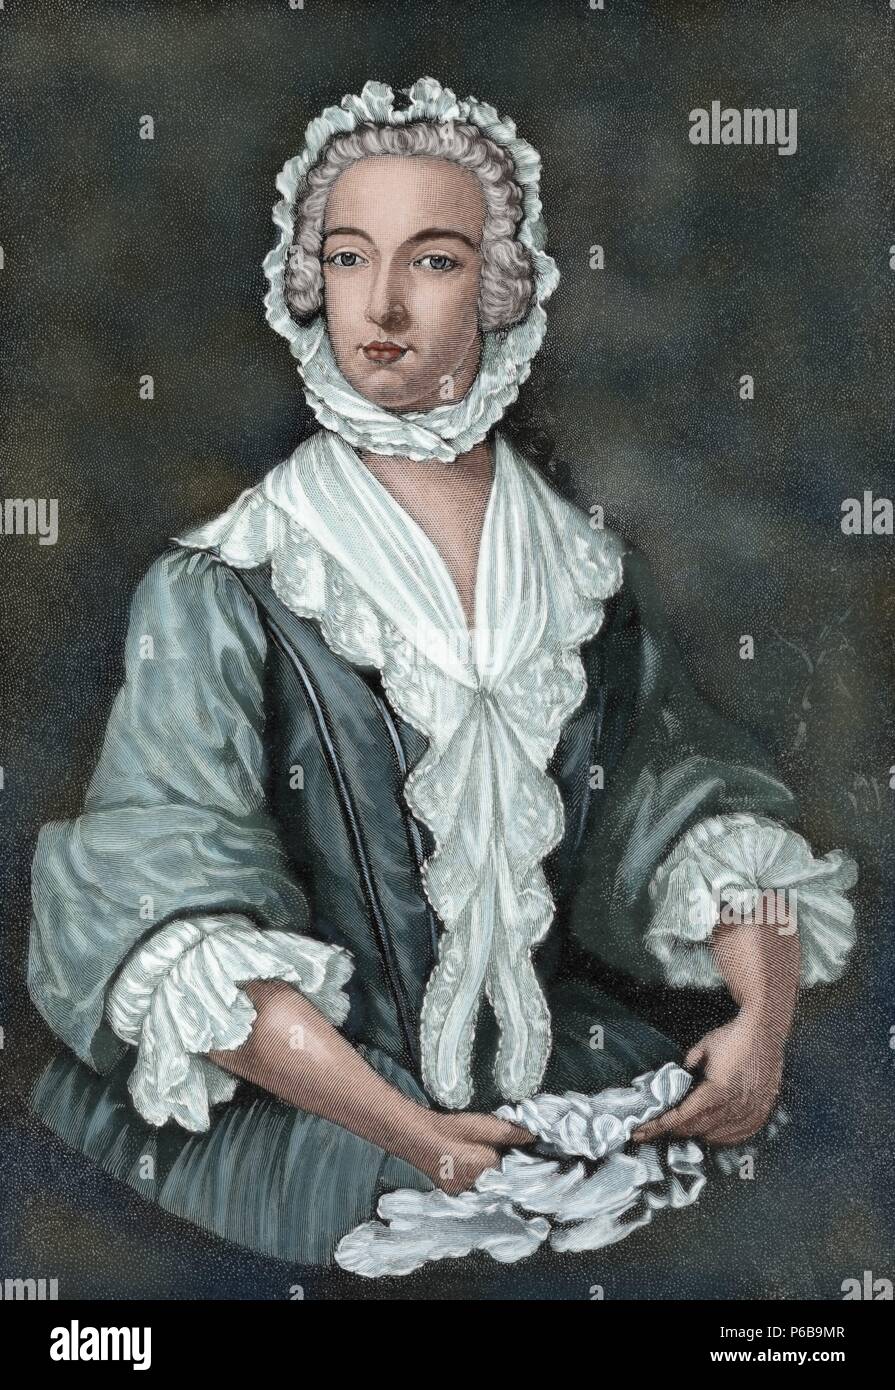 Charles Édouard Stuart (1720-1788). Aristocrate écossais. Le prince Charles Édouard Stuart déguisé comme Betty Burke, 1747. Dans la Péninsule Ibérique gravure Illustration, 1885. De couleur. Banque D'Images